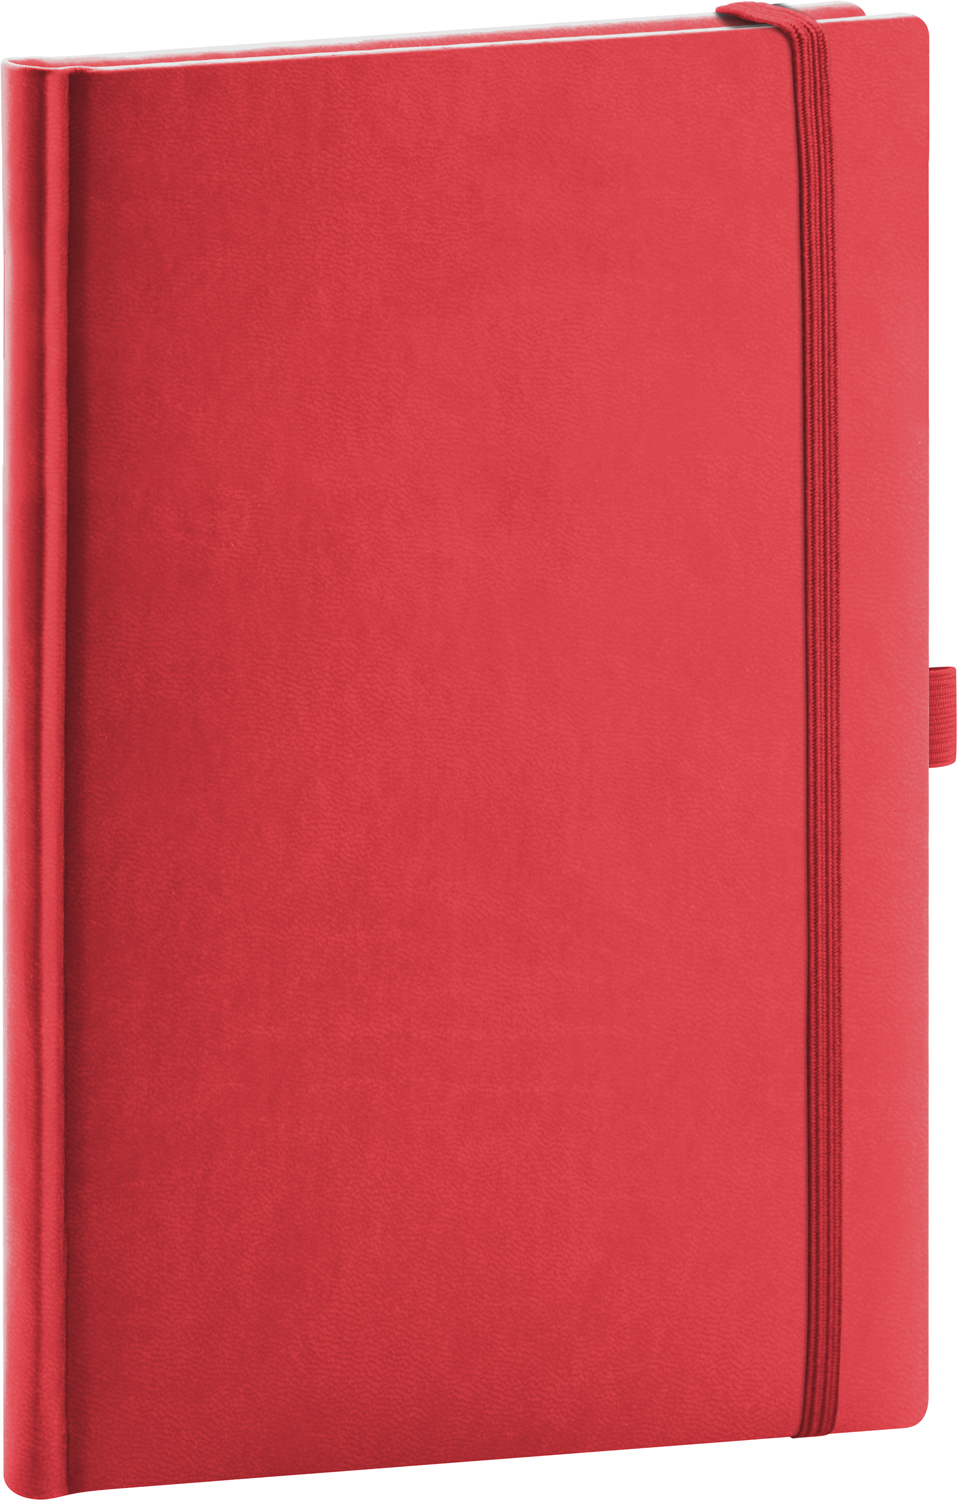 Linkovaný zápisník Aprint, A5 - červená